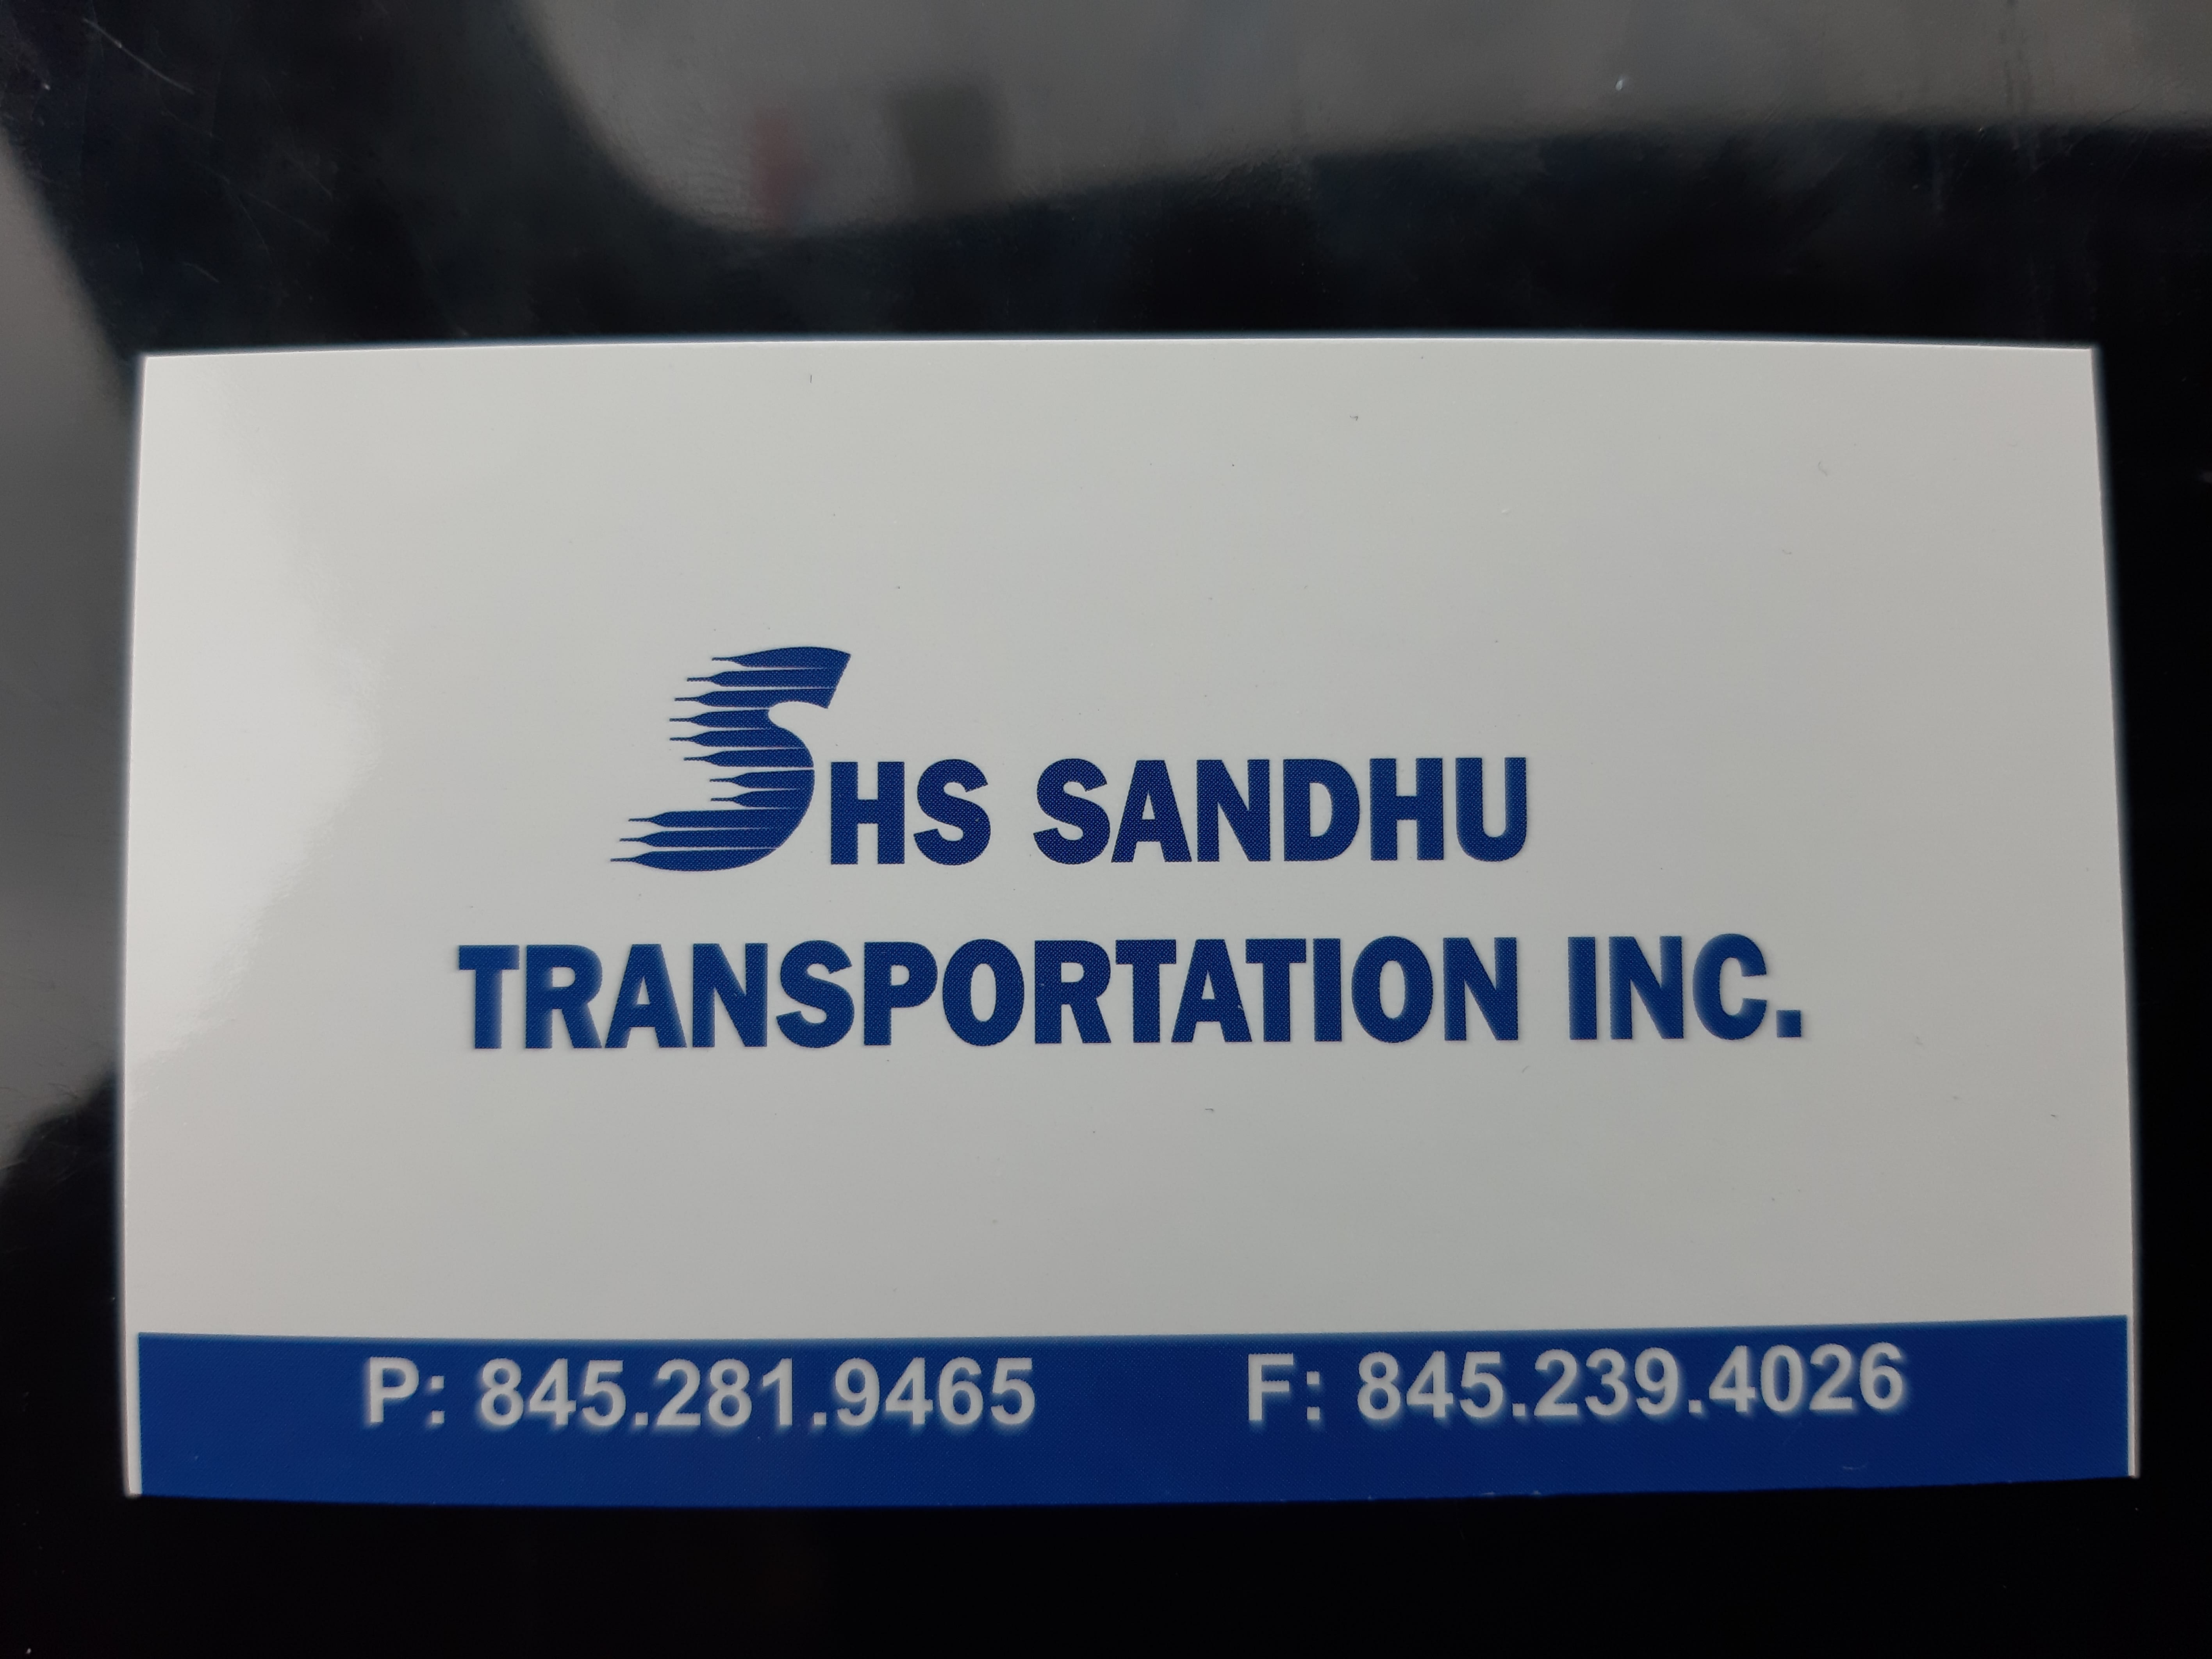 SHS Sandhu Transportation Inc